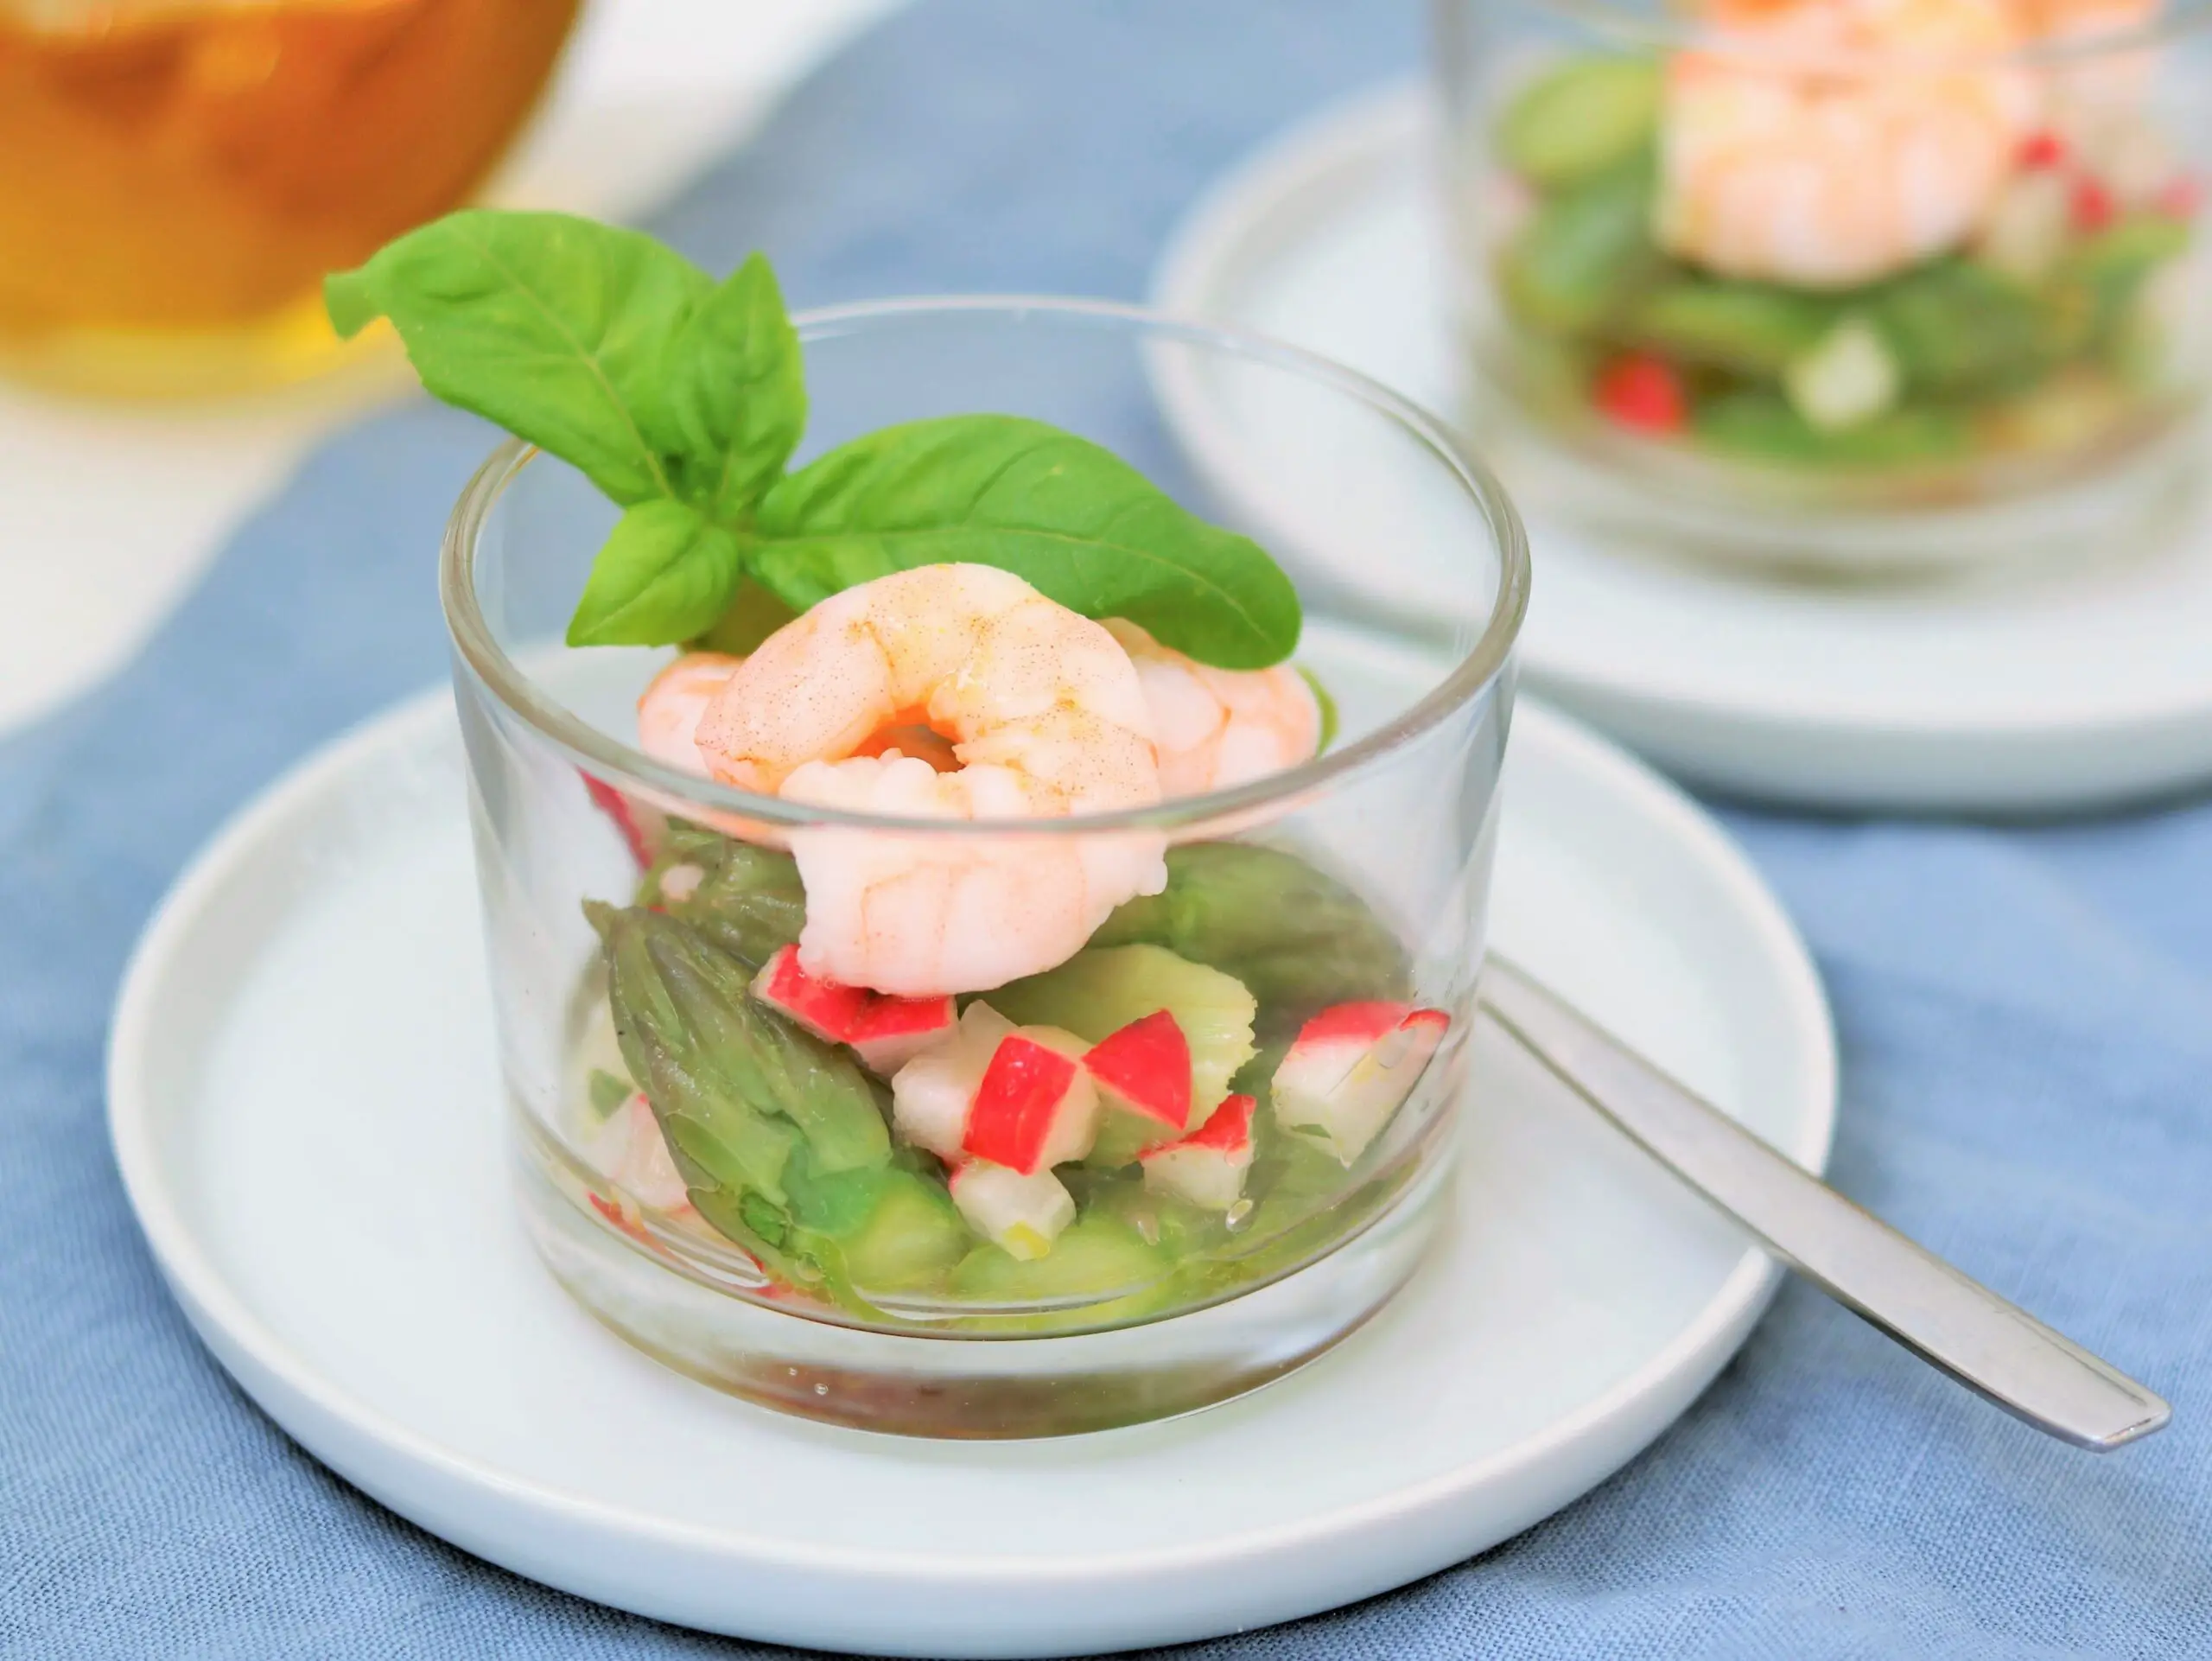 Radieschensalat mit Spargel & Wasabi-Dressing